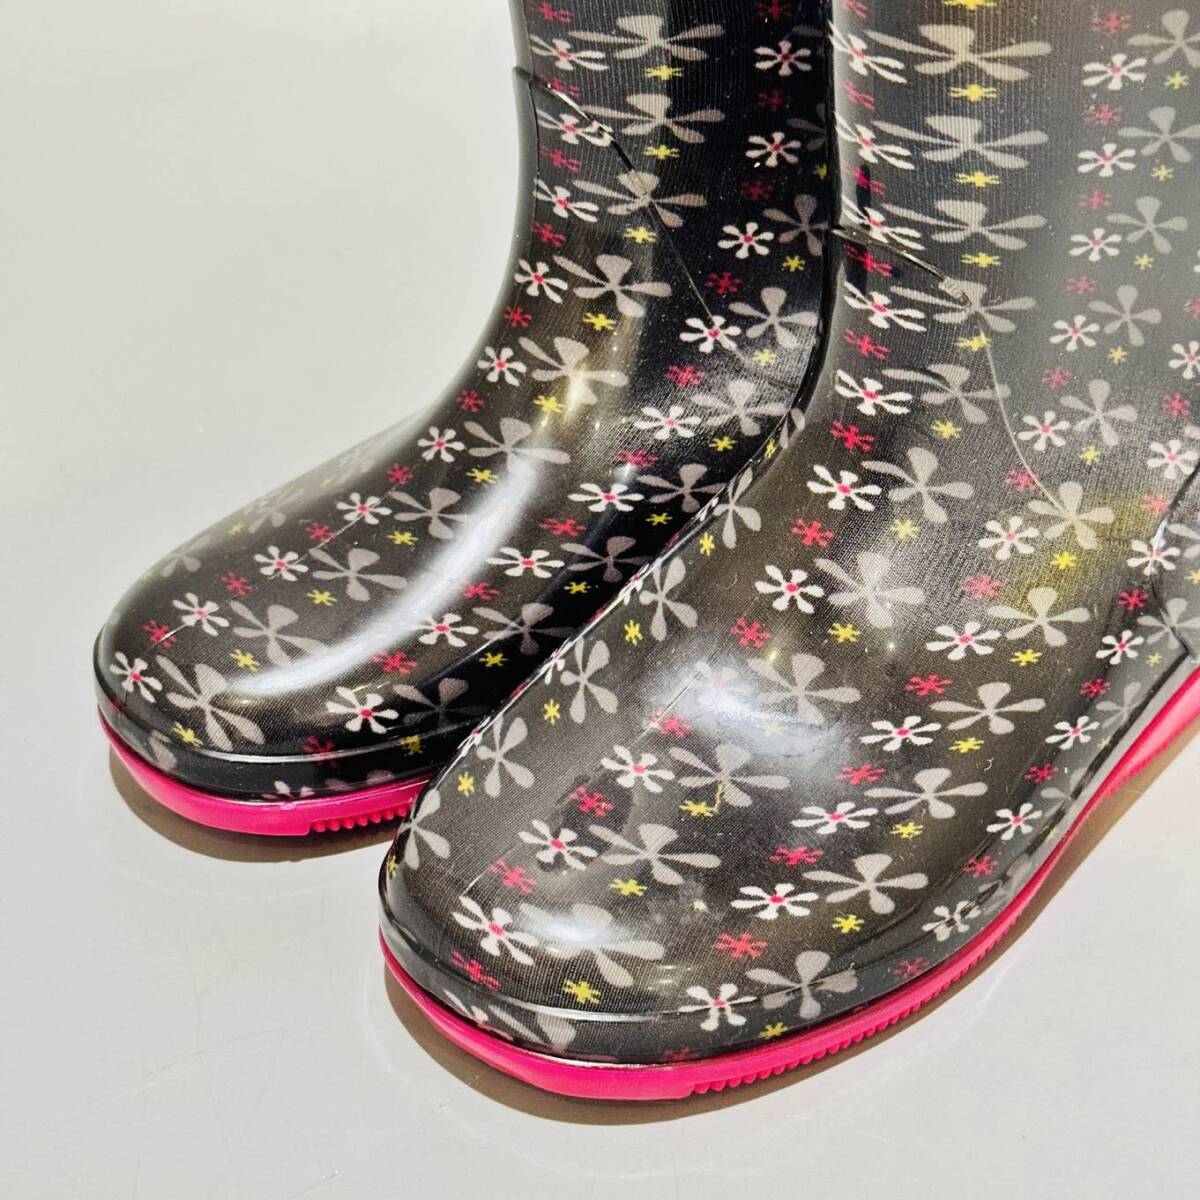 甲HK9982 新品未使用品 22.0cm キッズ ジュニア 女の子 パーソンズキッズ PERSON'S KIDS 花柄 レインブーツ 長靴 ゴム製 の画像2